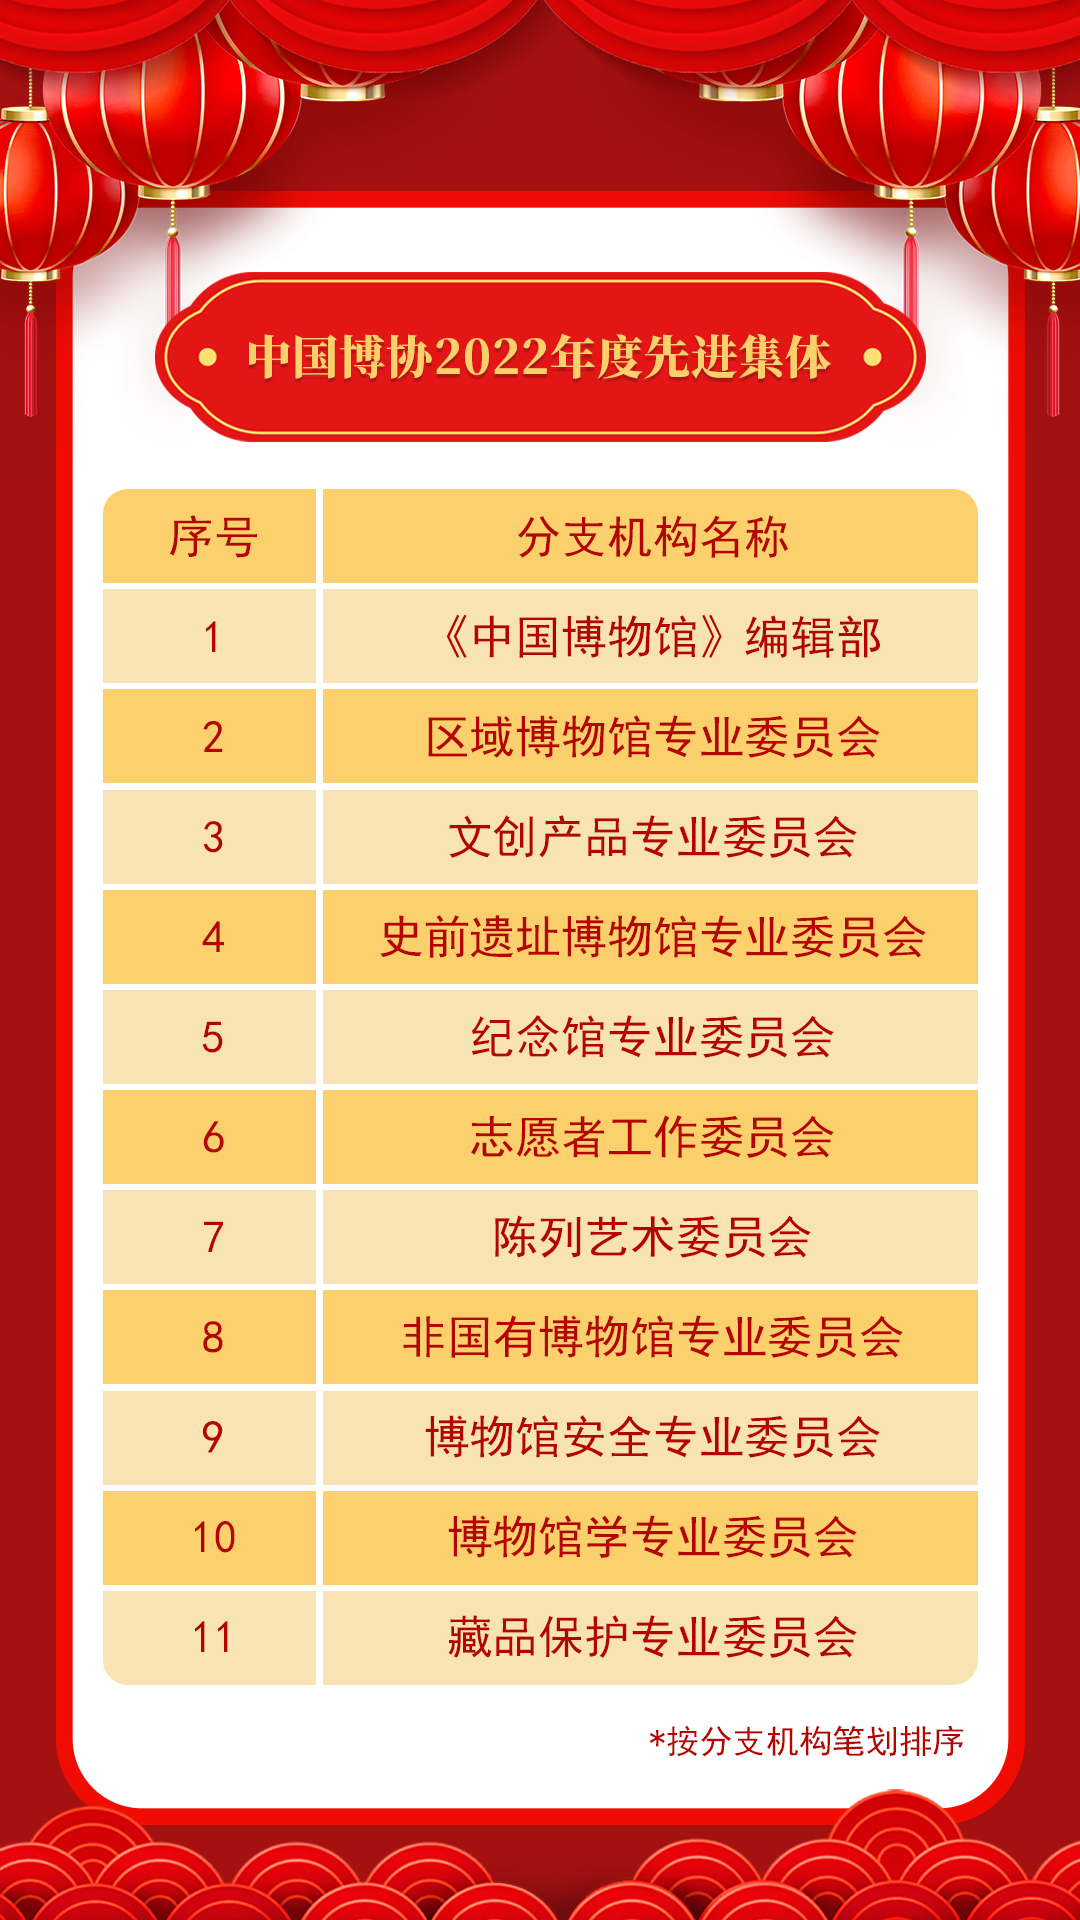 20230116-1-中国博协2022年度先进集体.jpg